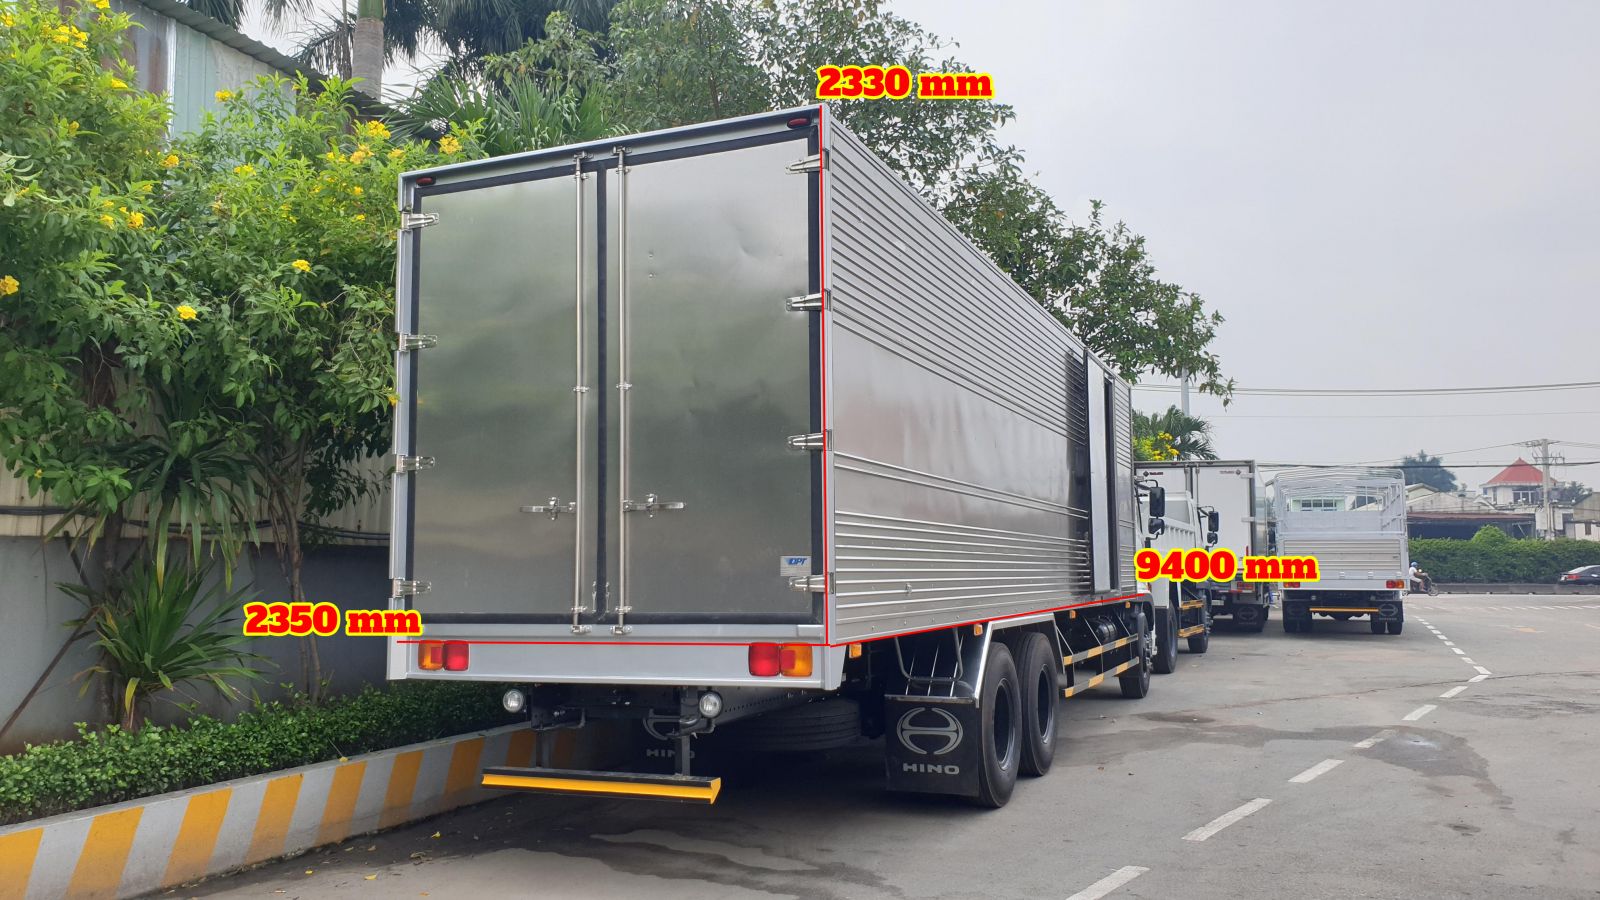 hino 15 tấn được đóng thùng kín với chiều dài 9m4 phù hợp cho các công ty chuyển phát nhanh